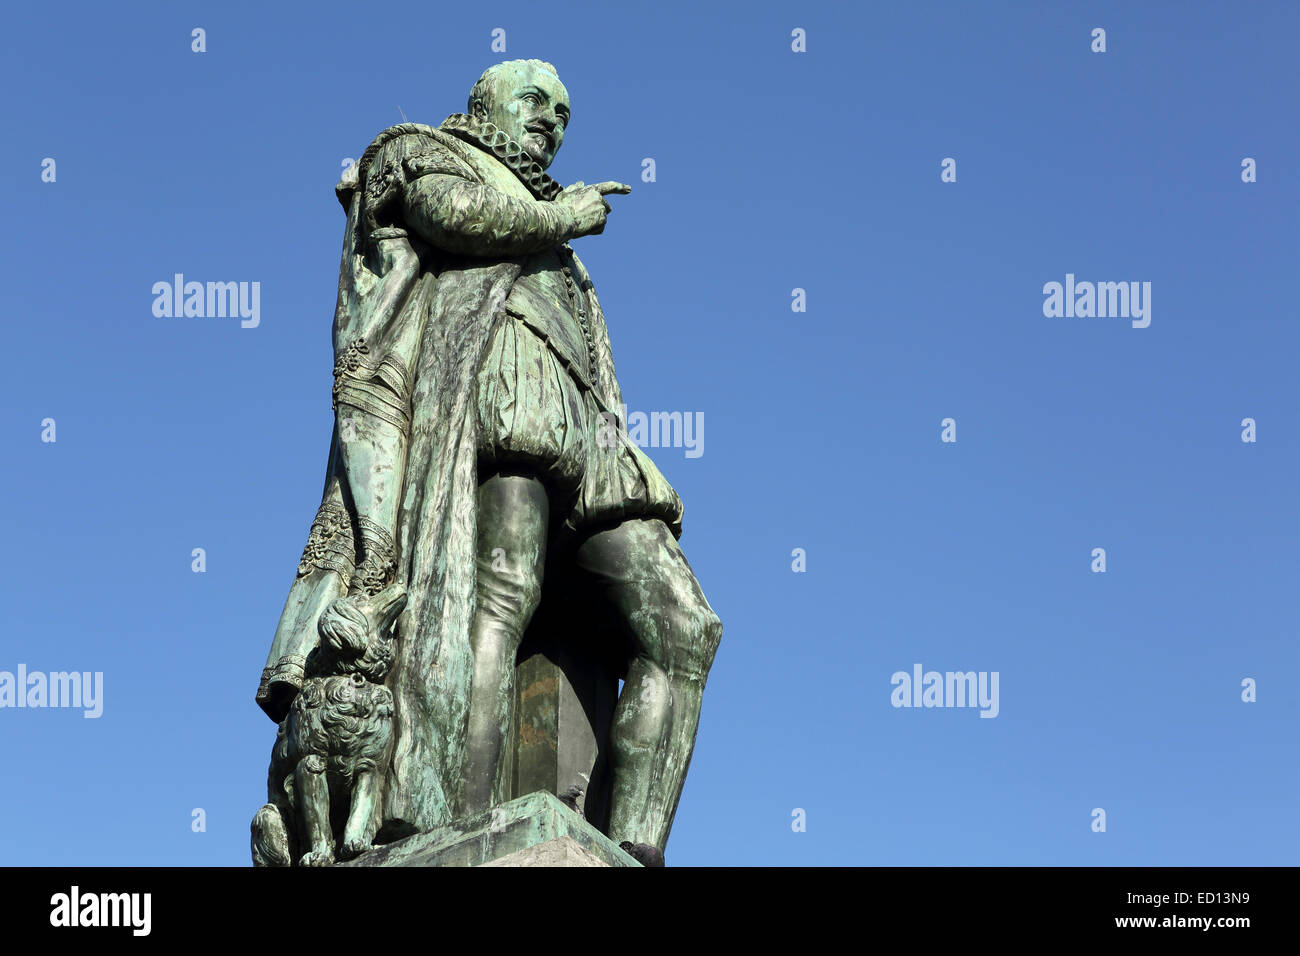 Statua in onore di Guglielmo I il principe di Orange (1533 - 1584) a l'Aia (Den Haag), Paesi Bassi. Foto Stock